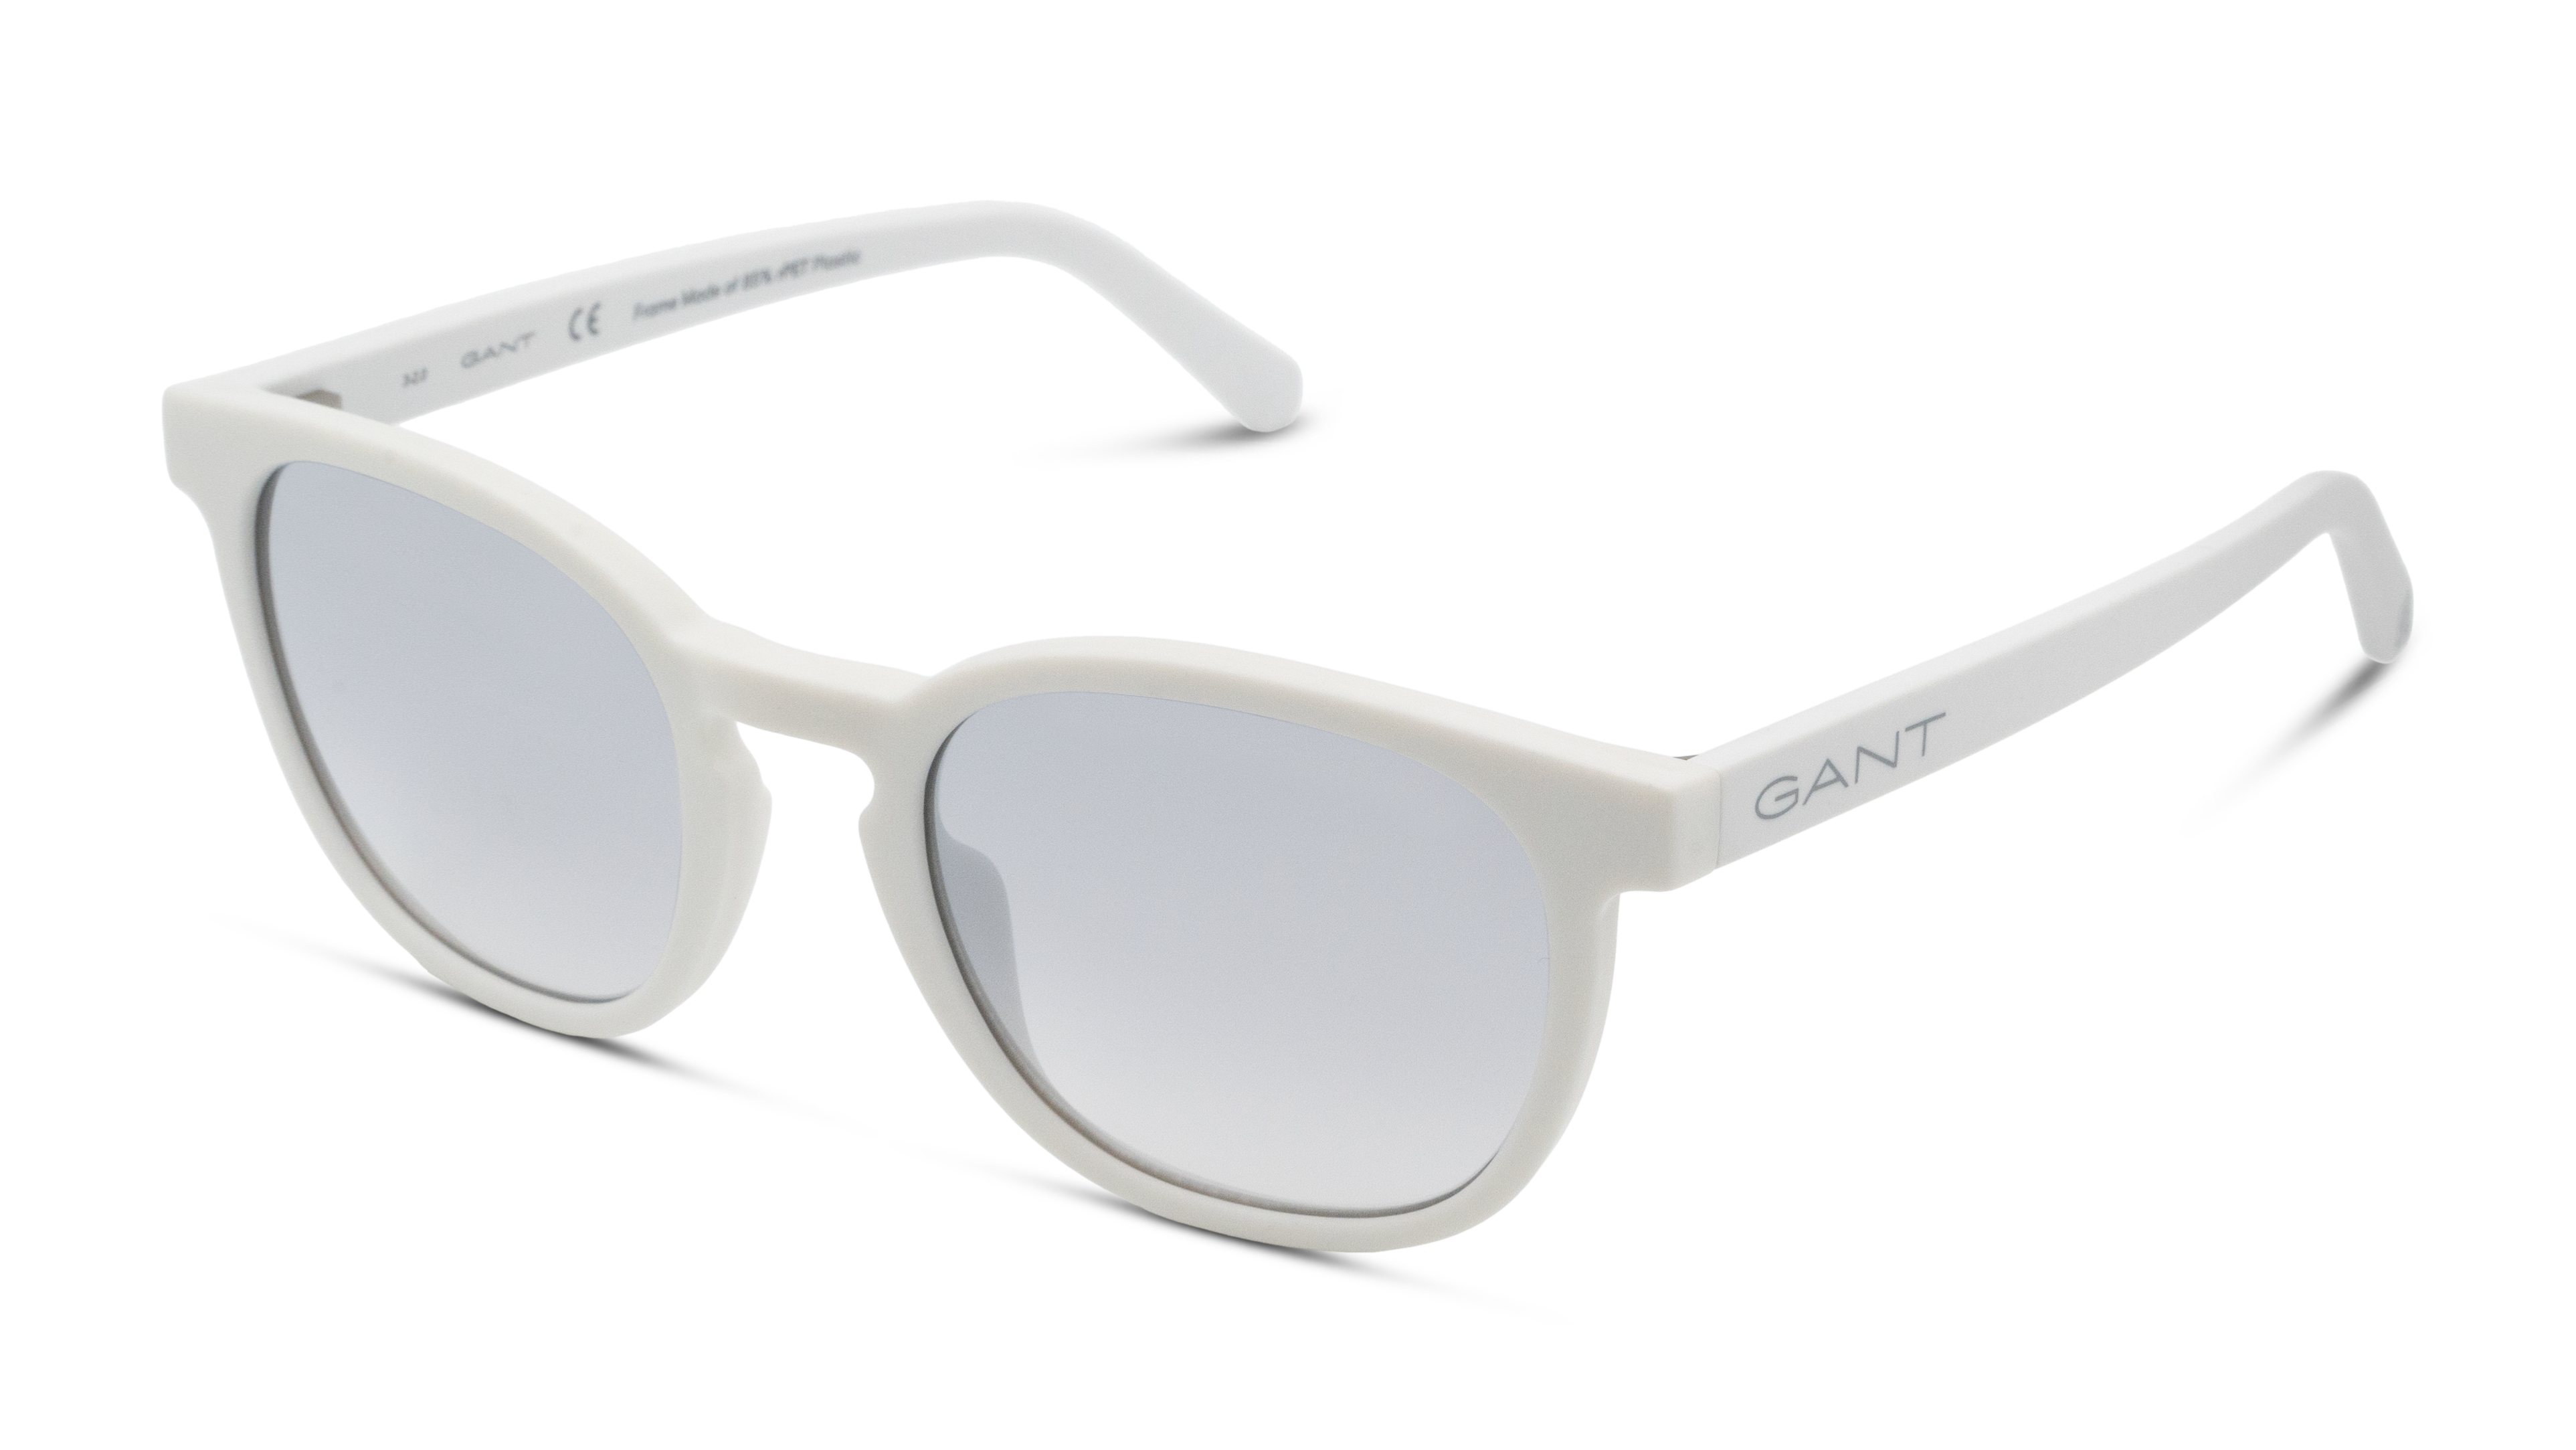 Angle_Left01 Gant GA 7203 Sunglasses Grey / White